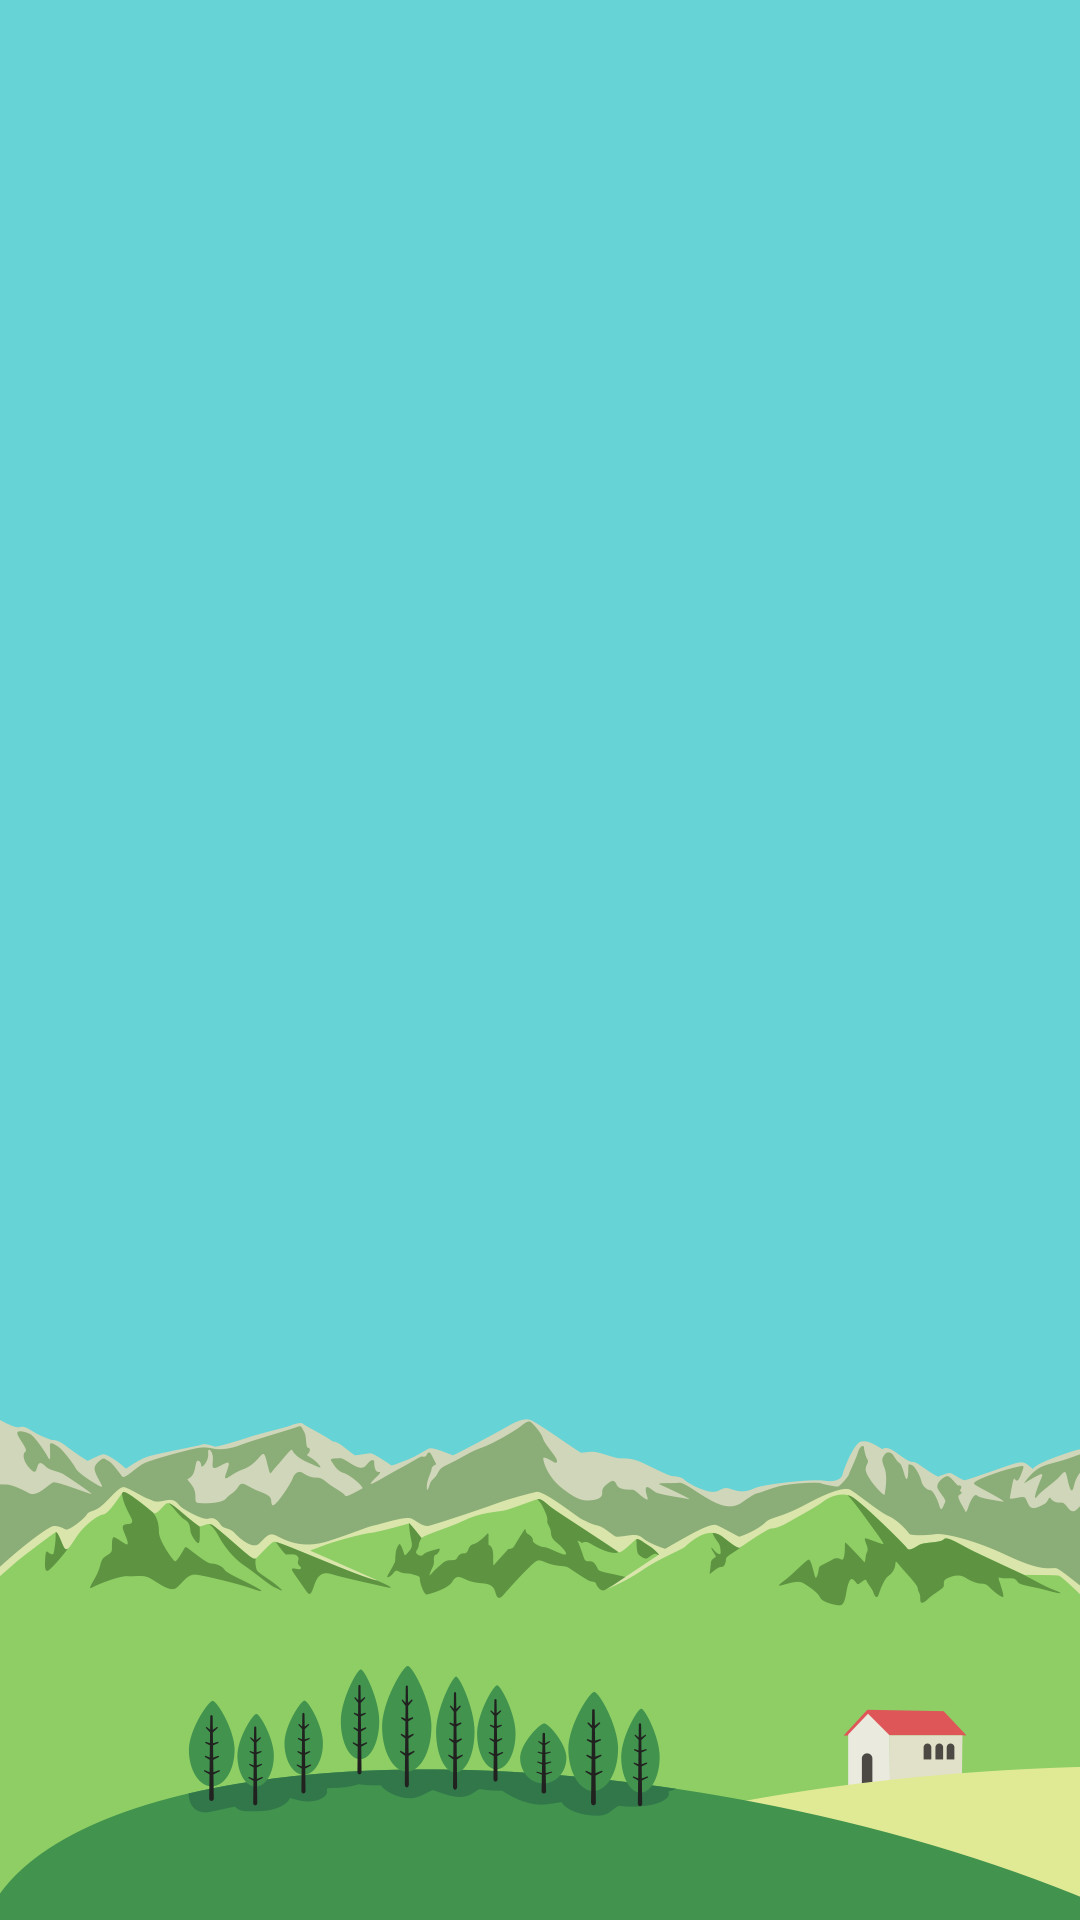 1080x1920 Minimal iPhone wallpaper â¤ mountain country